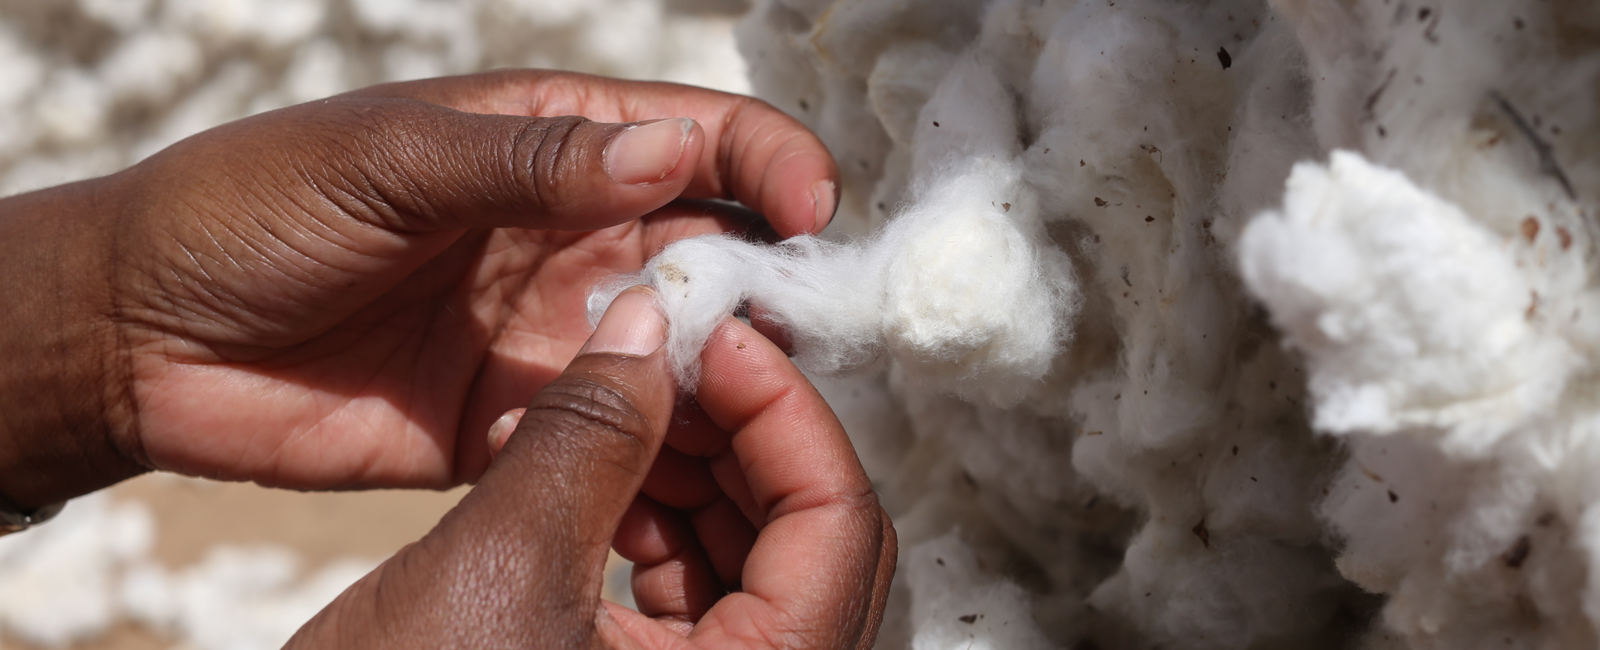 cotton burkina faso